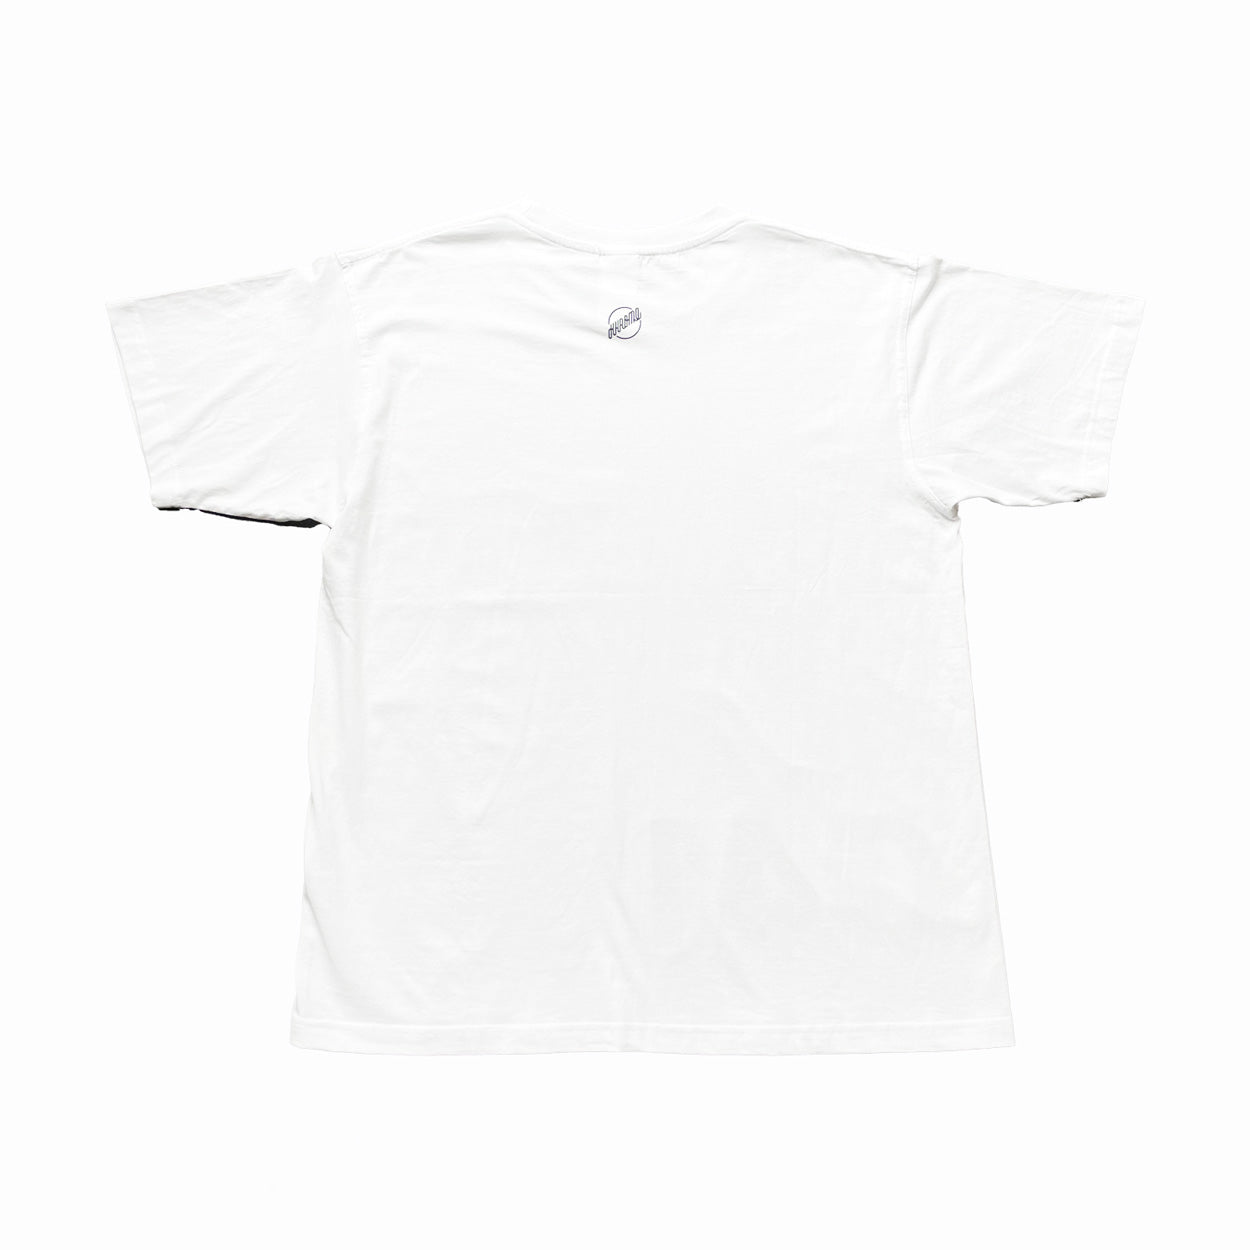 KHROME T-Shirt C41 White/Black